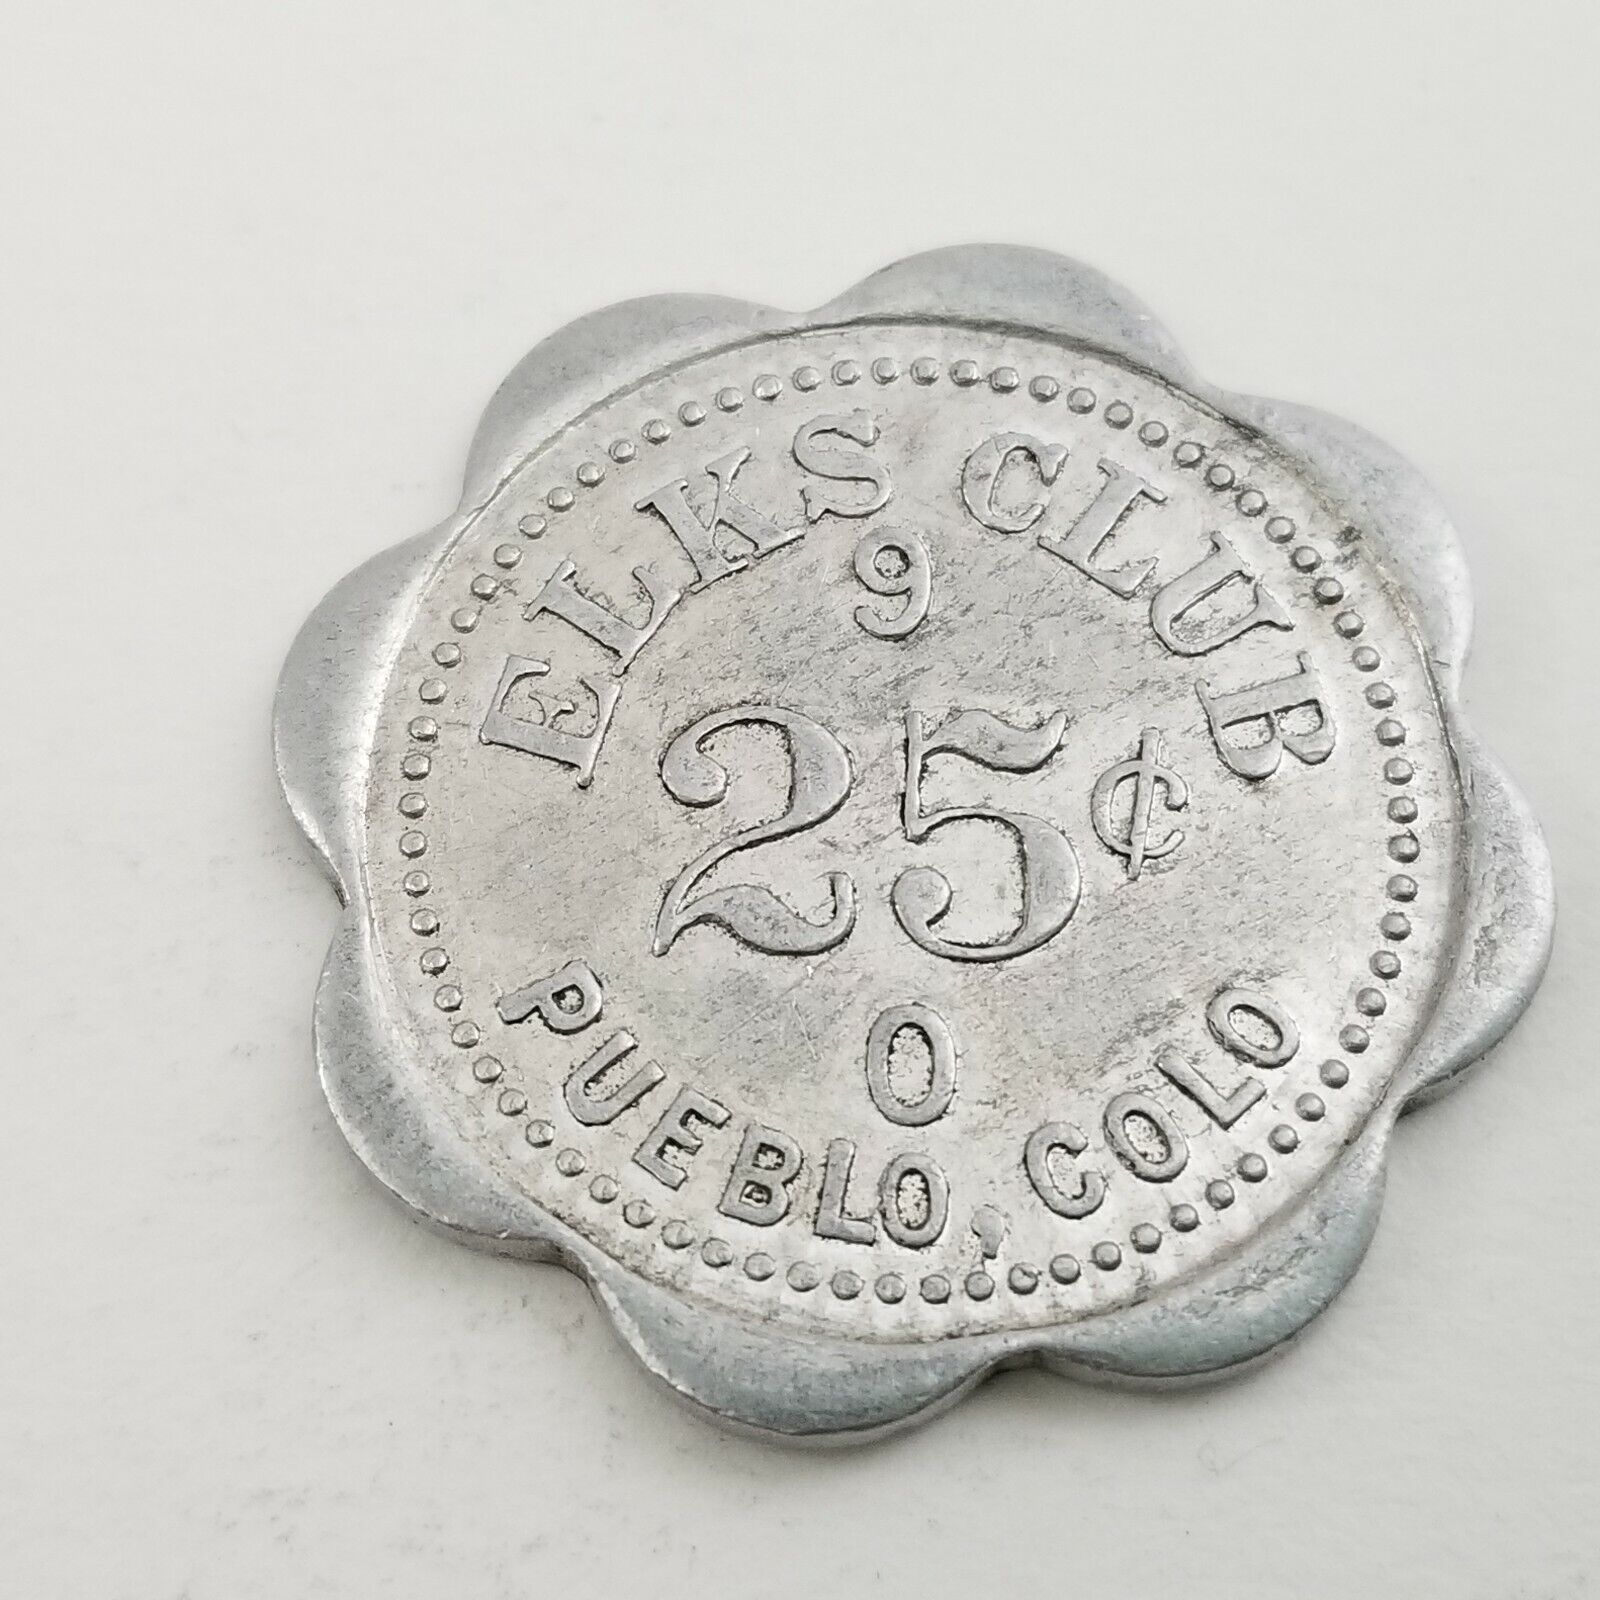 BPOE Elks Club Fraternal Coin Pueblo Colorado Lodge Member 25 Cent Token